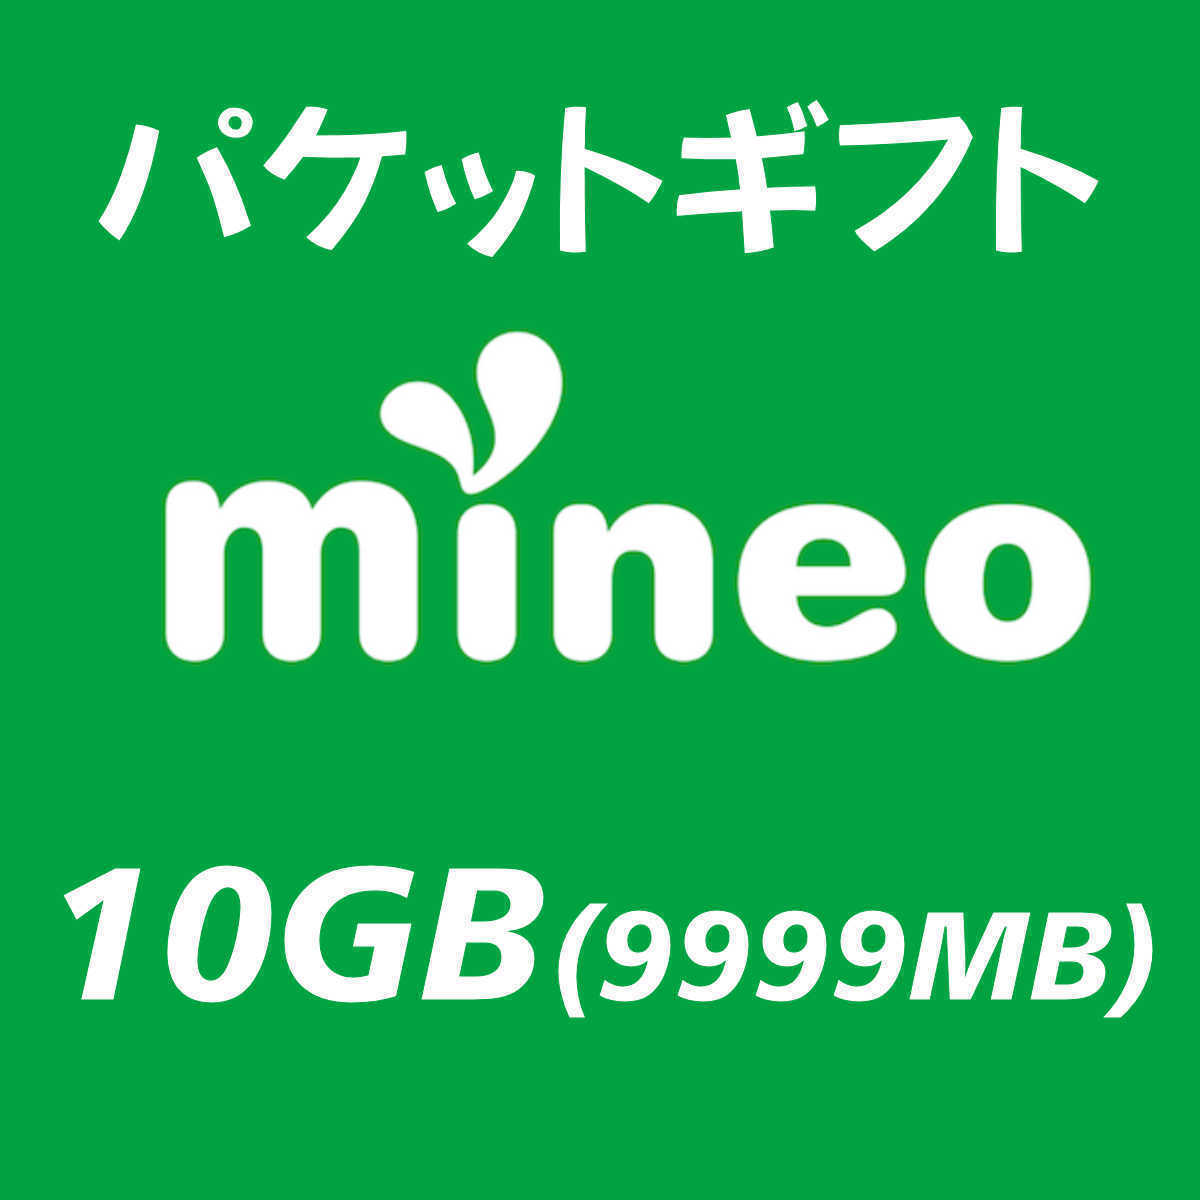 10GB(9999MB) マイネオ　パケットギフト mineo　⑧_画像1